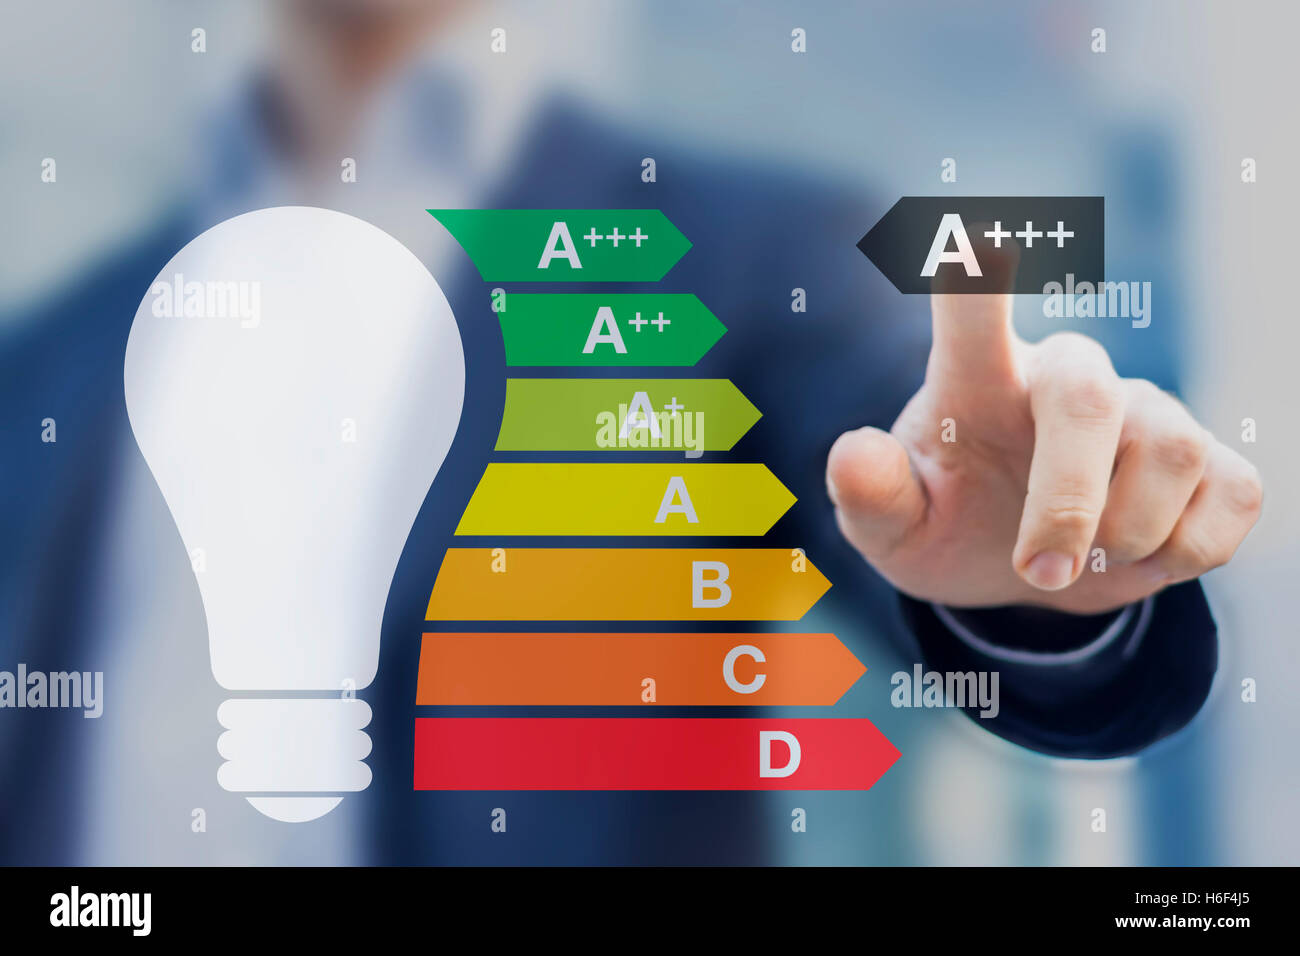 Ampoule avec les meilleures performances classe a + + + affiche sur l'étiquette d'efficacité énergétique Banque D'Images